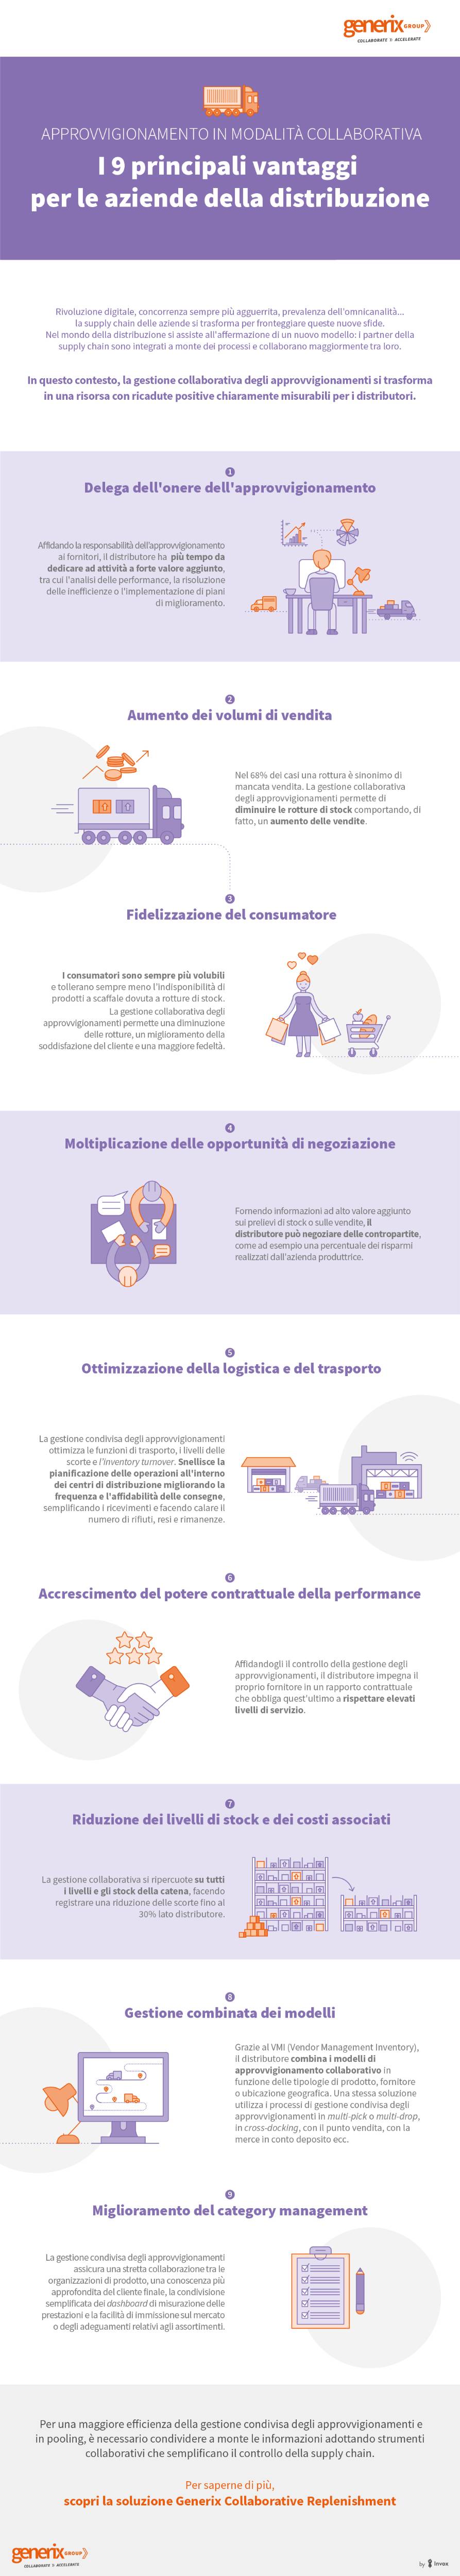 infografica-generix-approvvigionamento-collaborativo-distribuzione